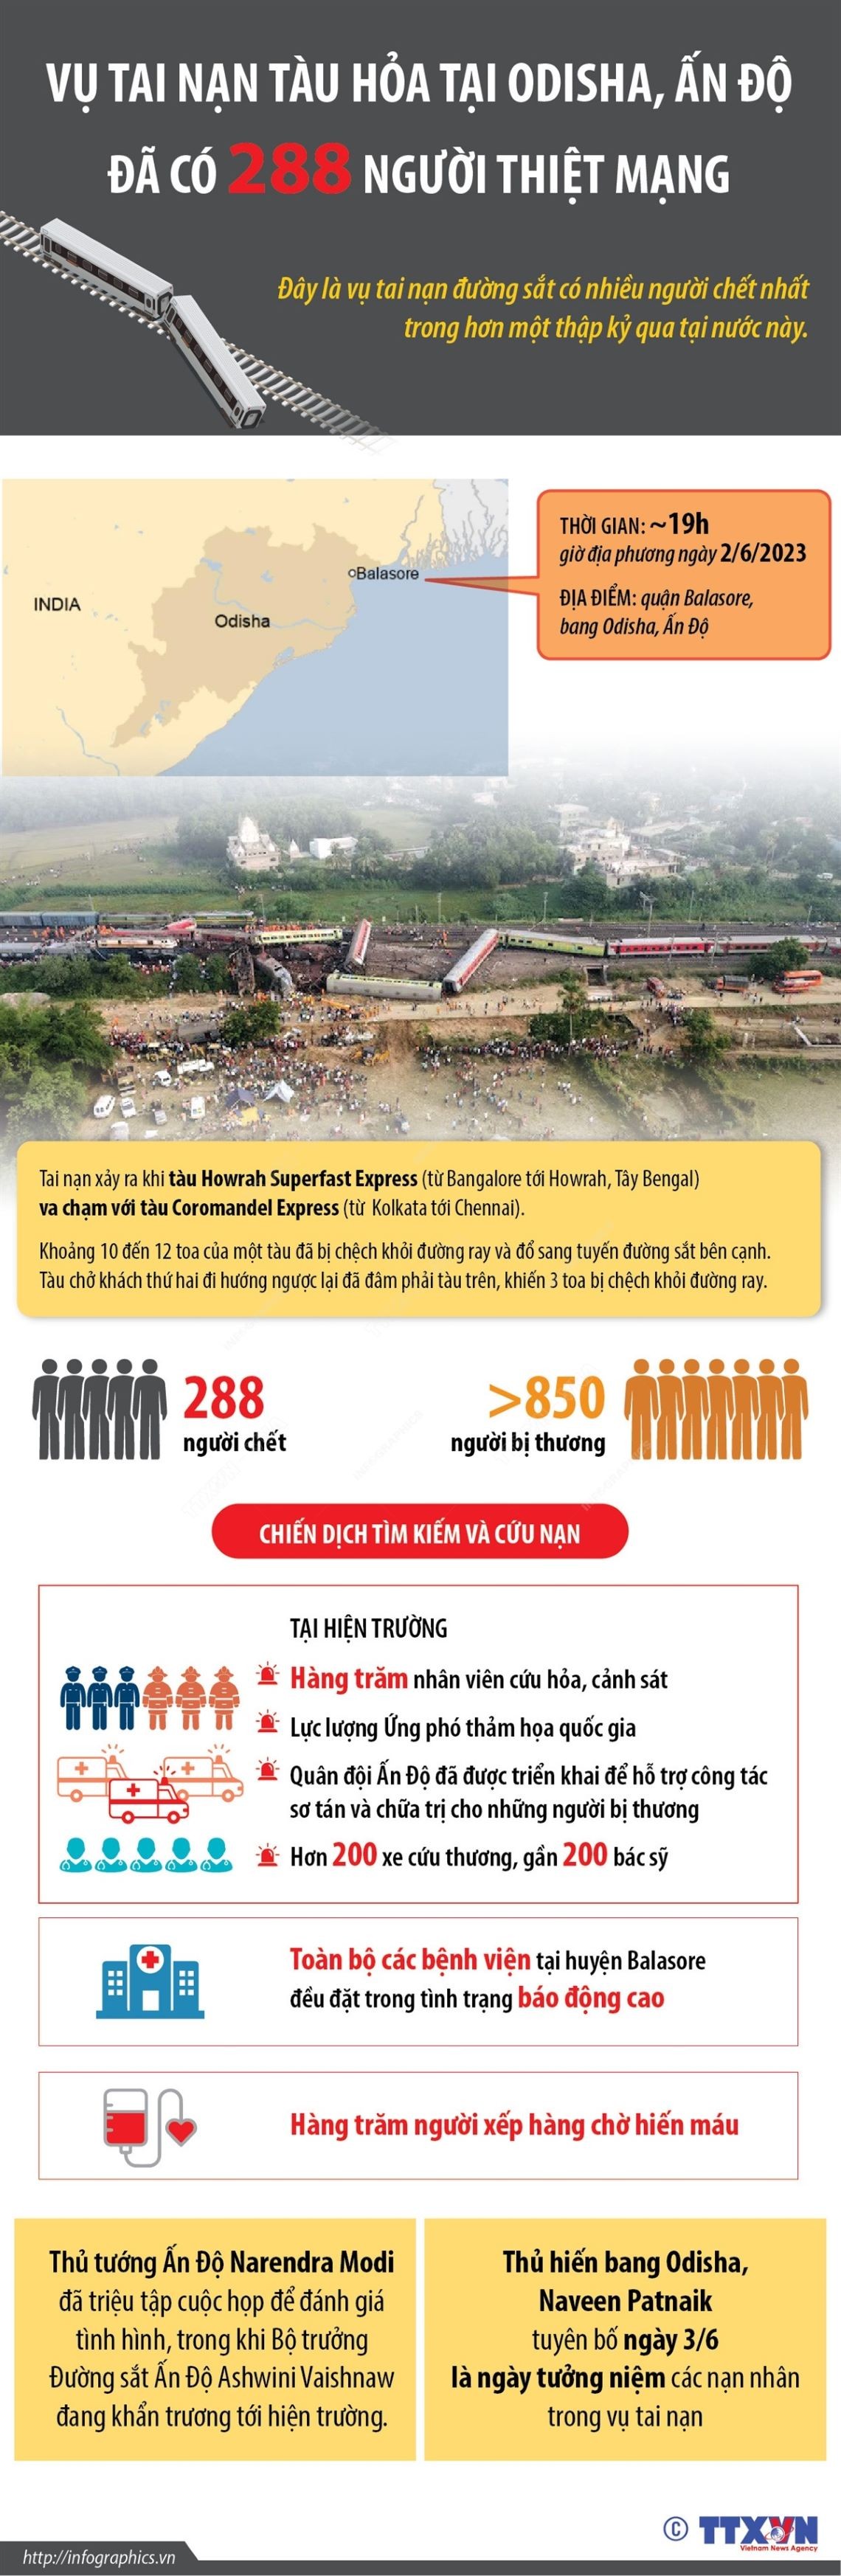 Tai nạn đường sắt làm nhiều người thiệt mạng nhất trong hơn 20 năm ở Ấn Độ